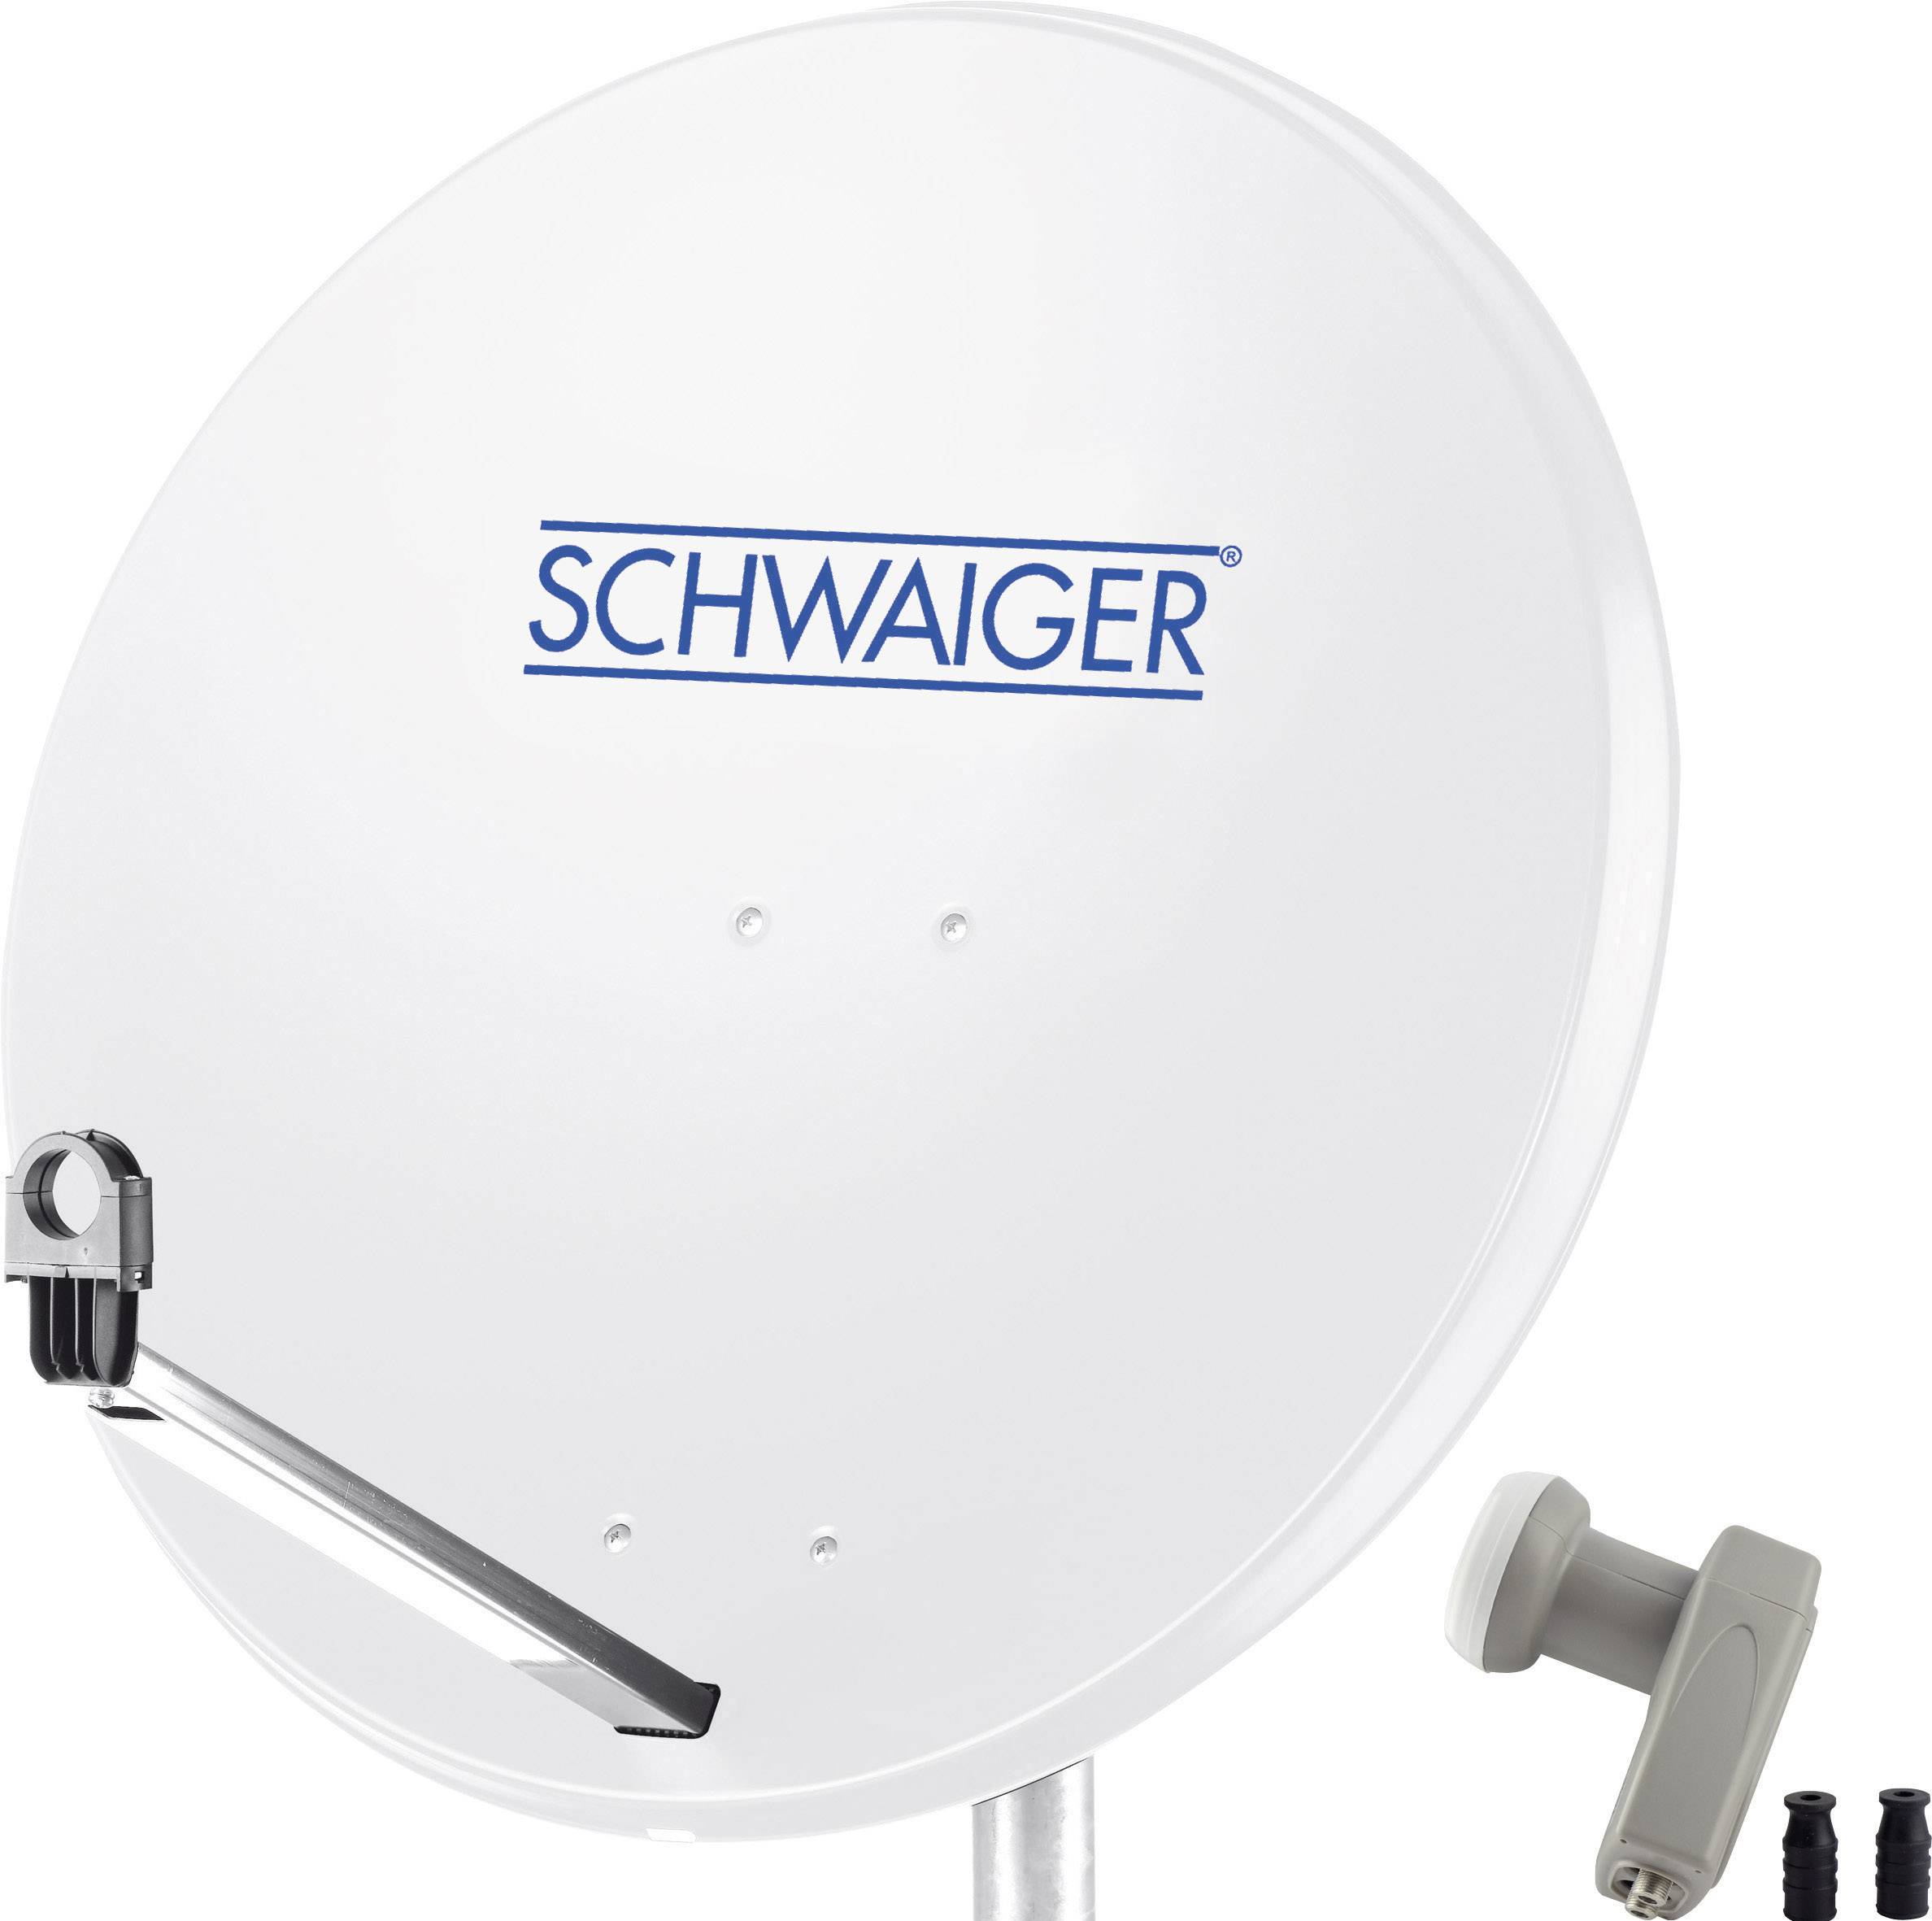 dichtbij schrijven Namaak Schwaiger satellietinstallatie voor 1 satelliet - satellietschotel 80 cm,  lichtgrijs, LNB - 2 aansluitingen | Conrad.nl